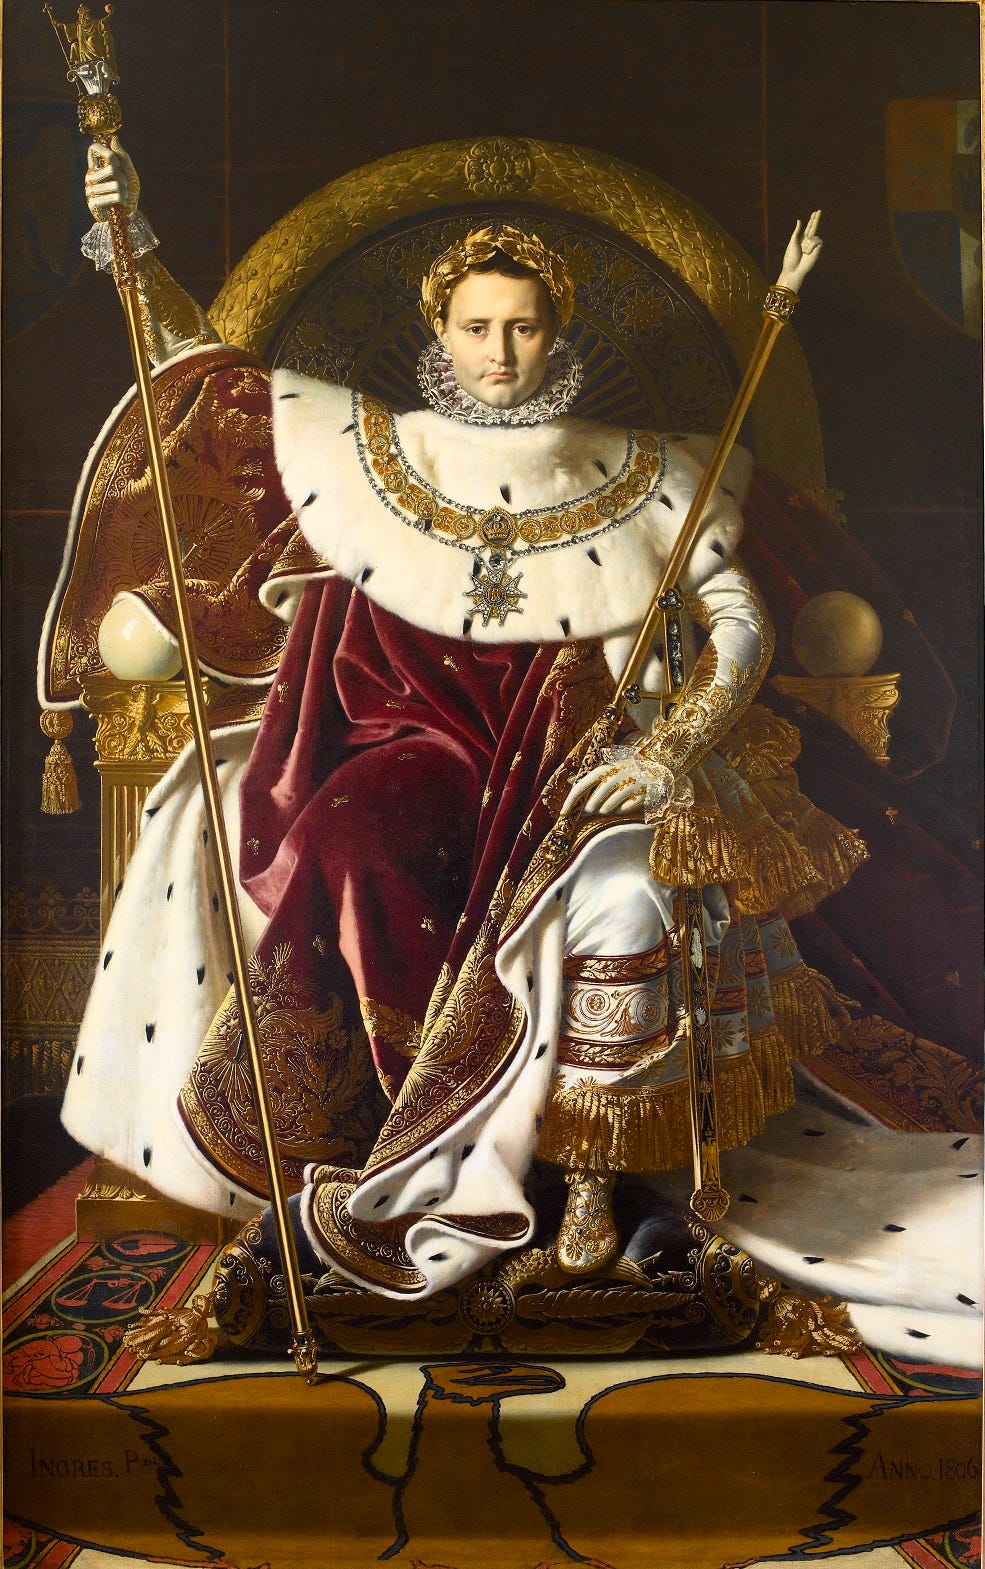 Portraits de l'empereur Napoléon - Histoire analysée en images et œuvres  d'art | https://histoire-image.org/